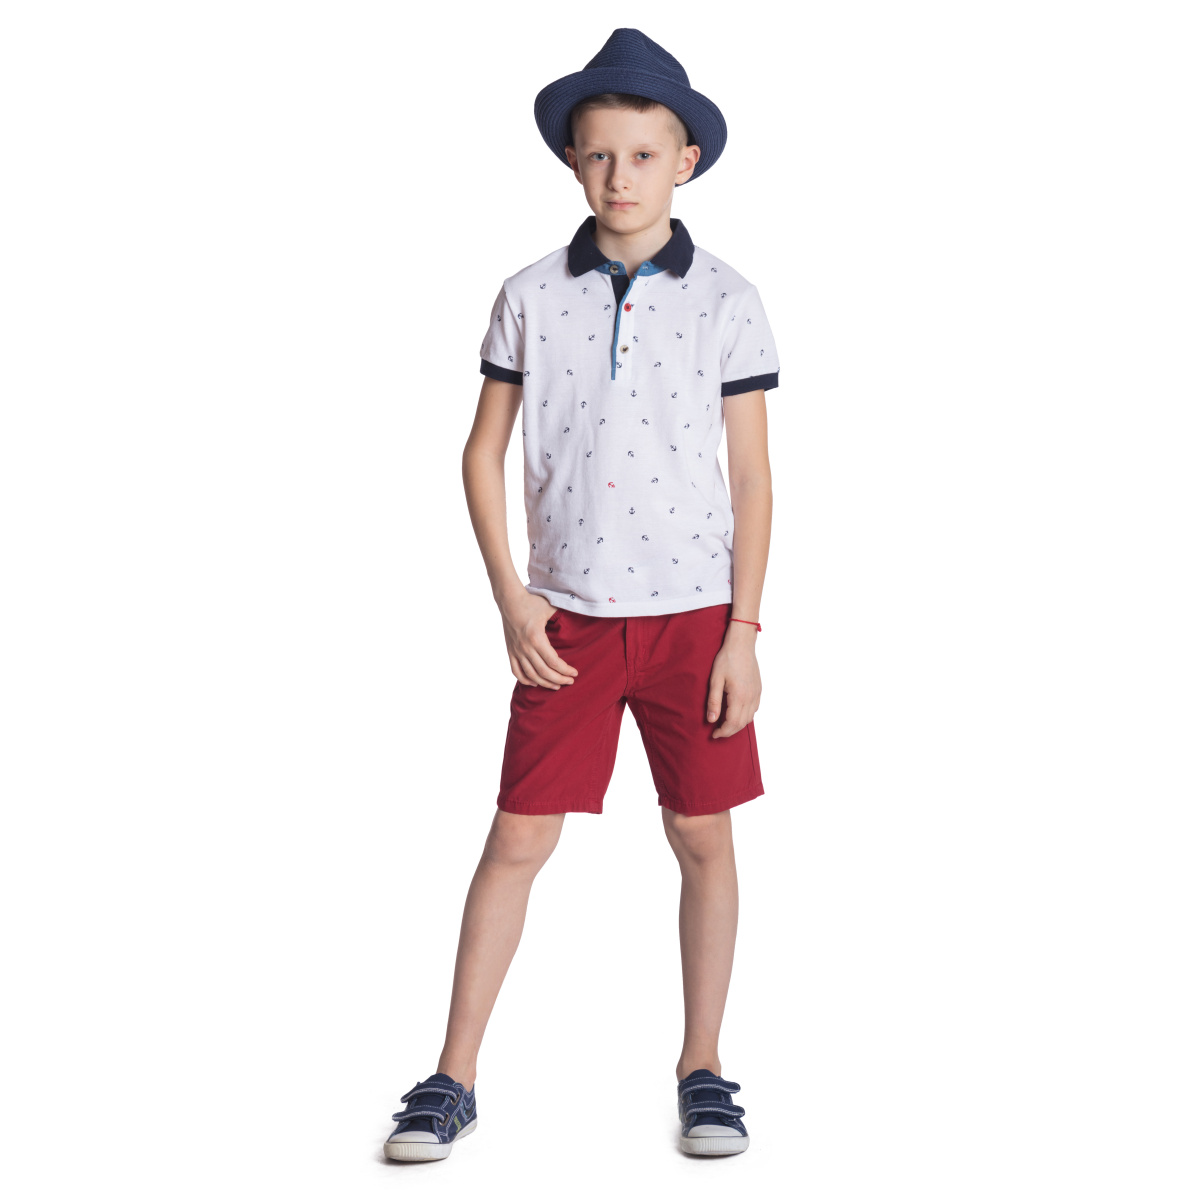 Комплект шорт для мальчика. Шорты для мальчика. Красные шорты для мальчиков. Мальчик в шортах и шляпе. Классические шорты для мальчика.